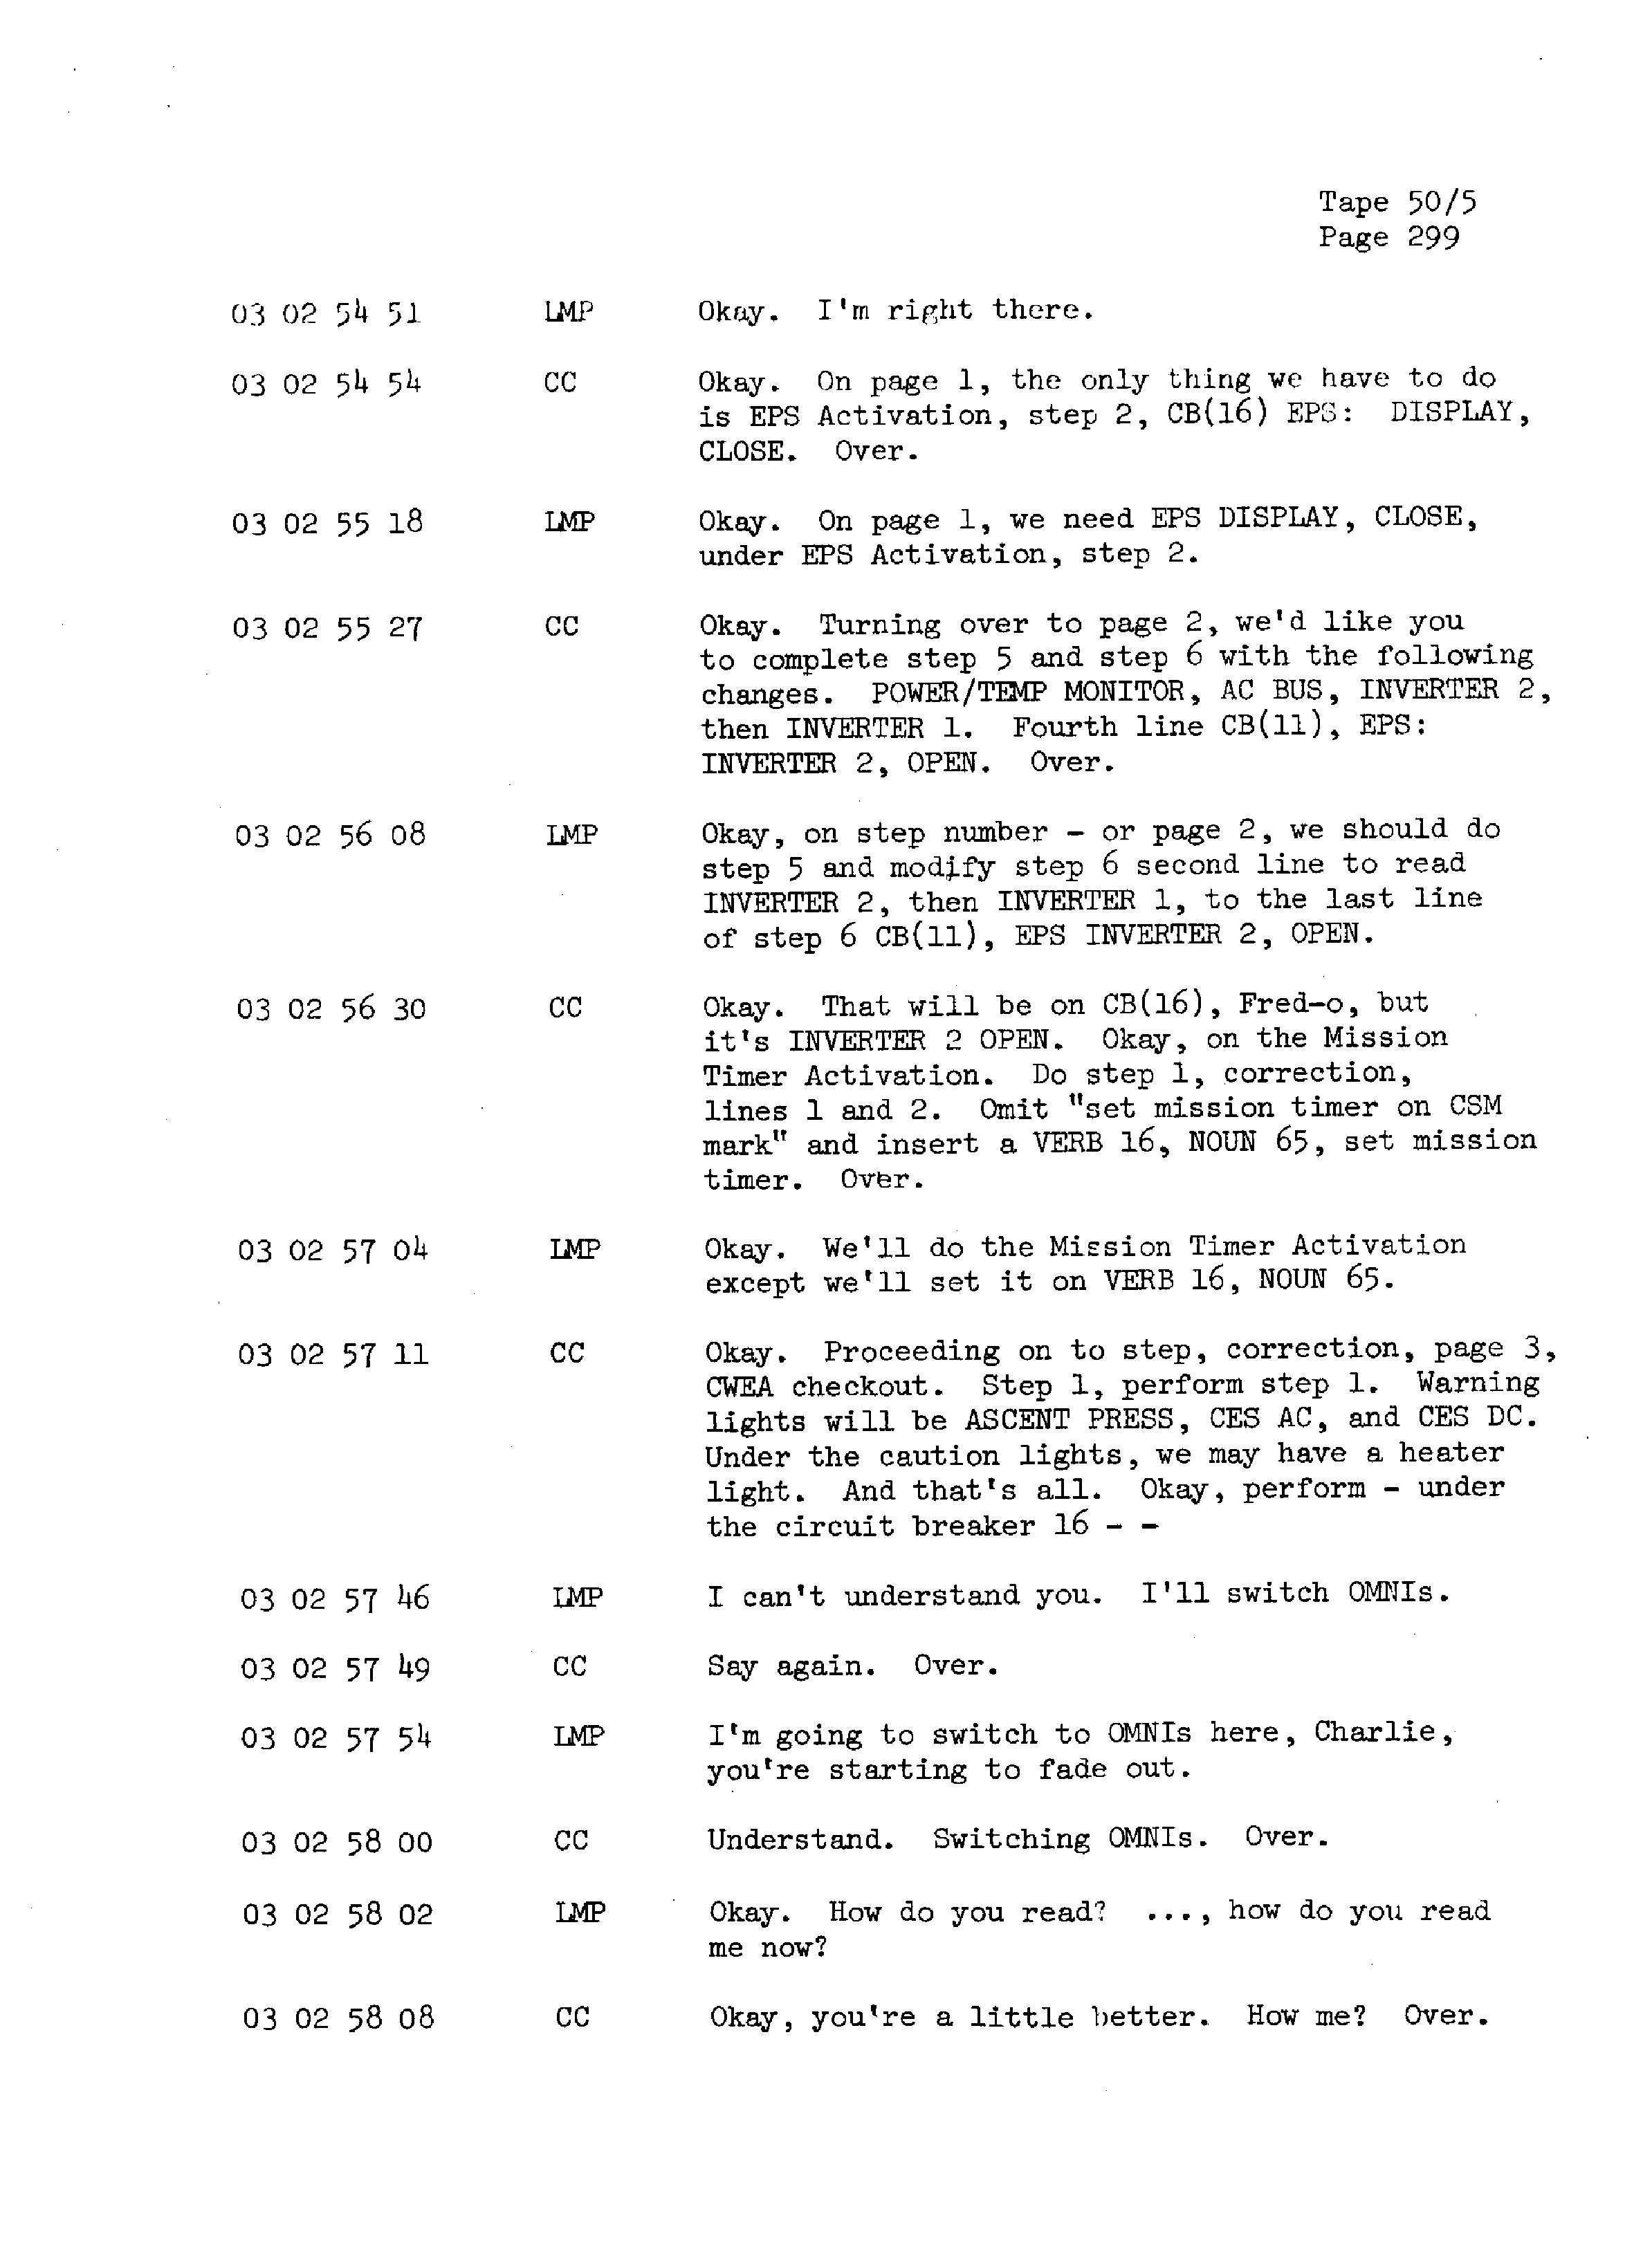 Page 306 of Apollo 13’s original transcript